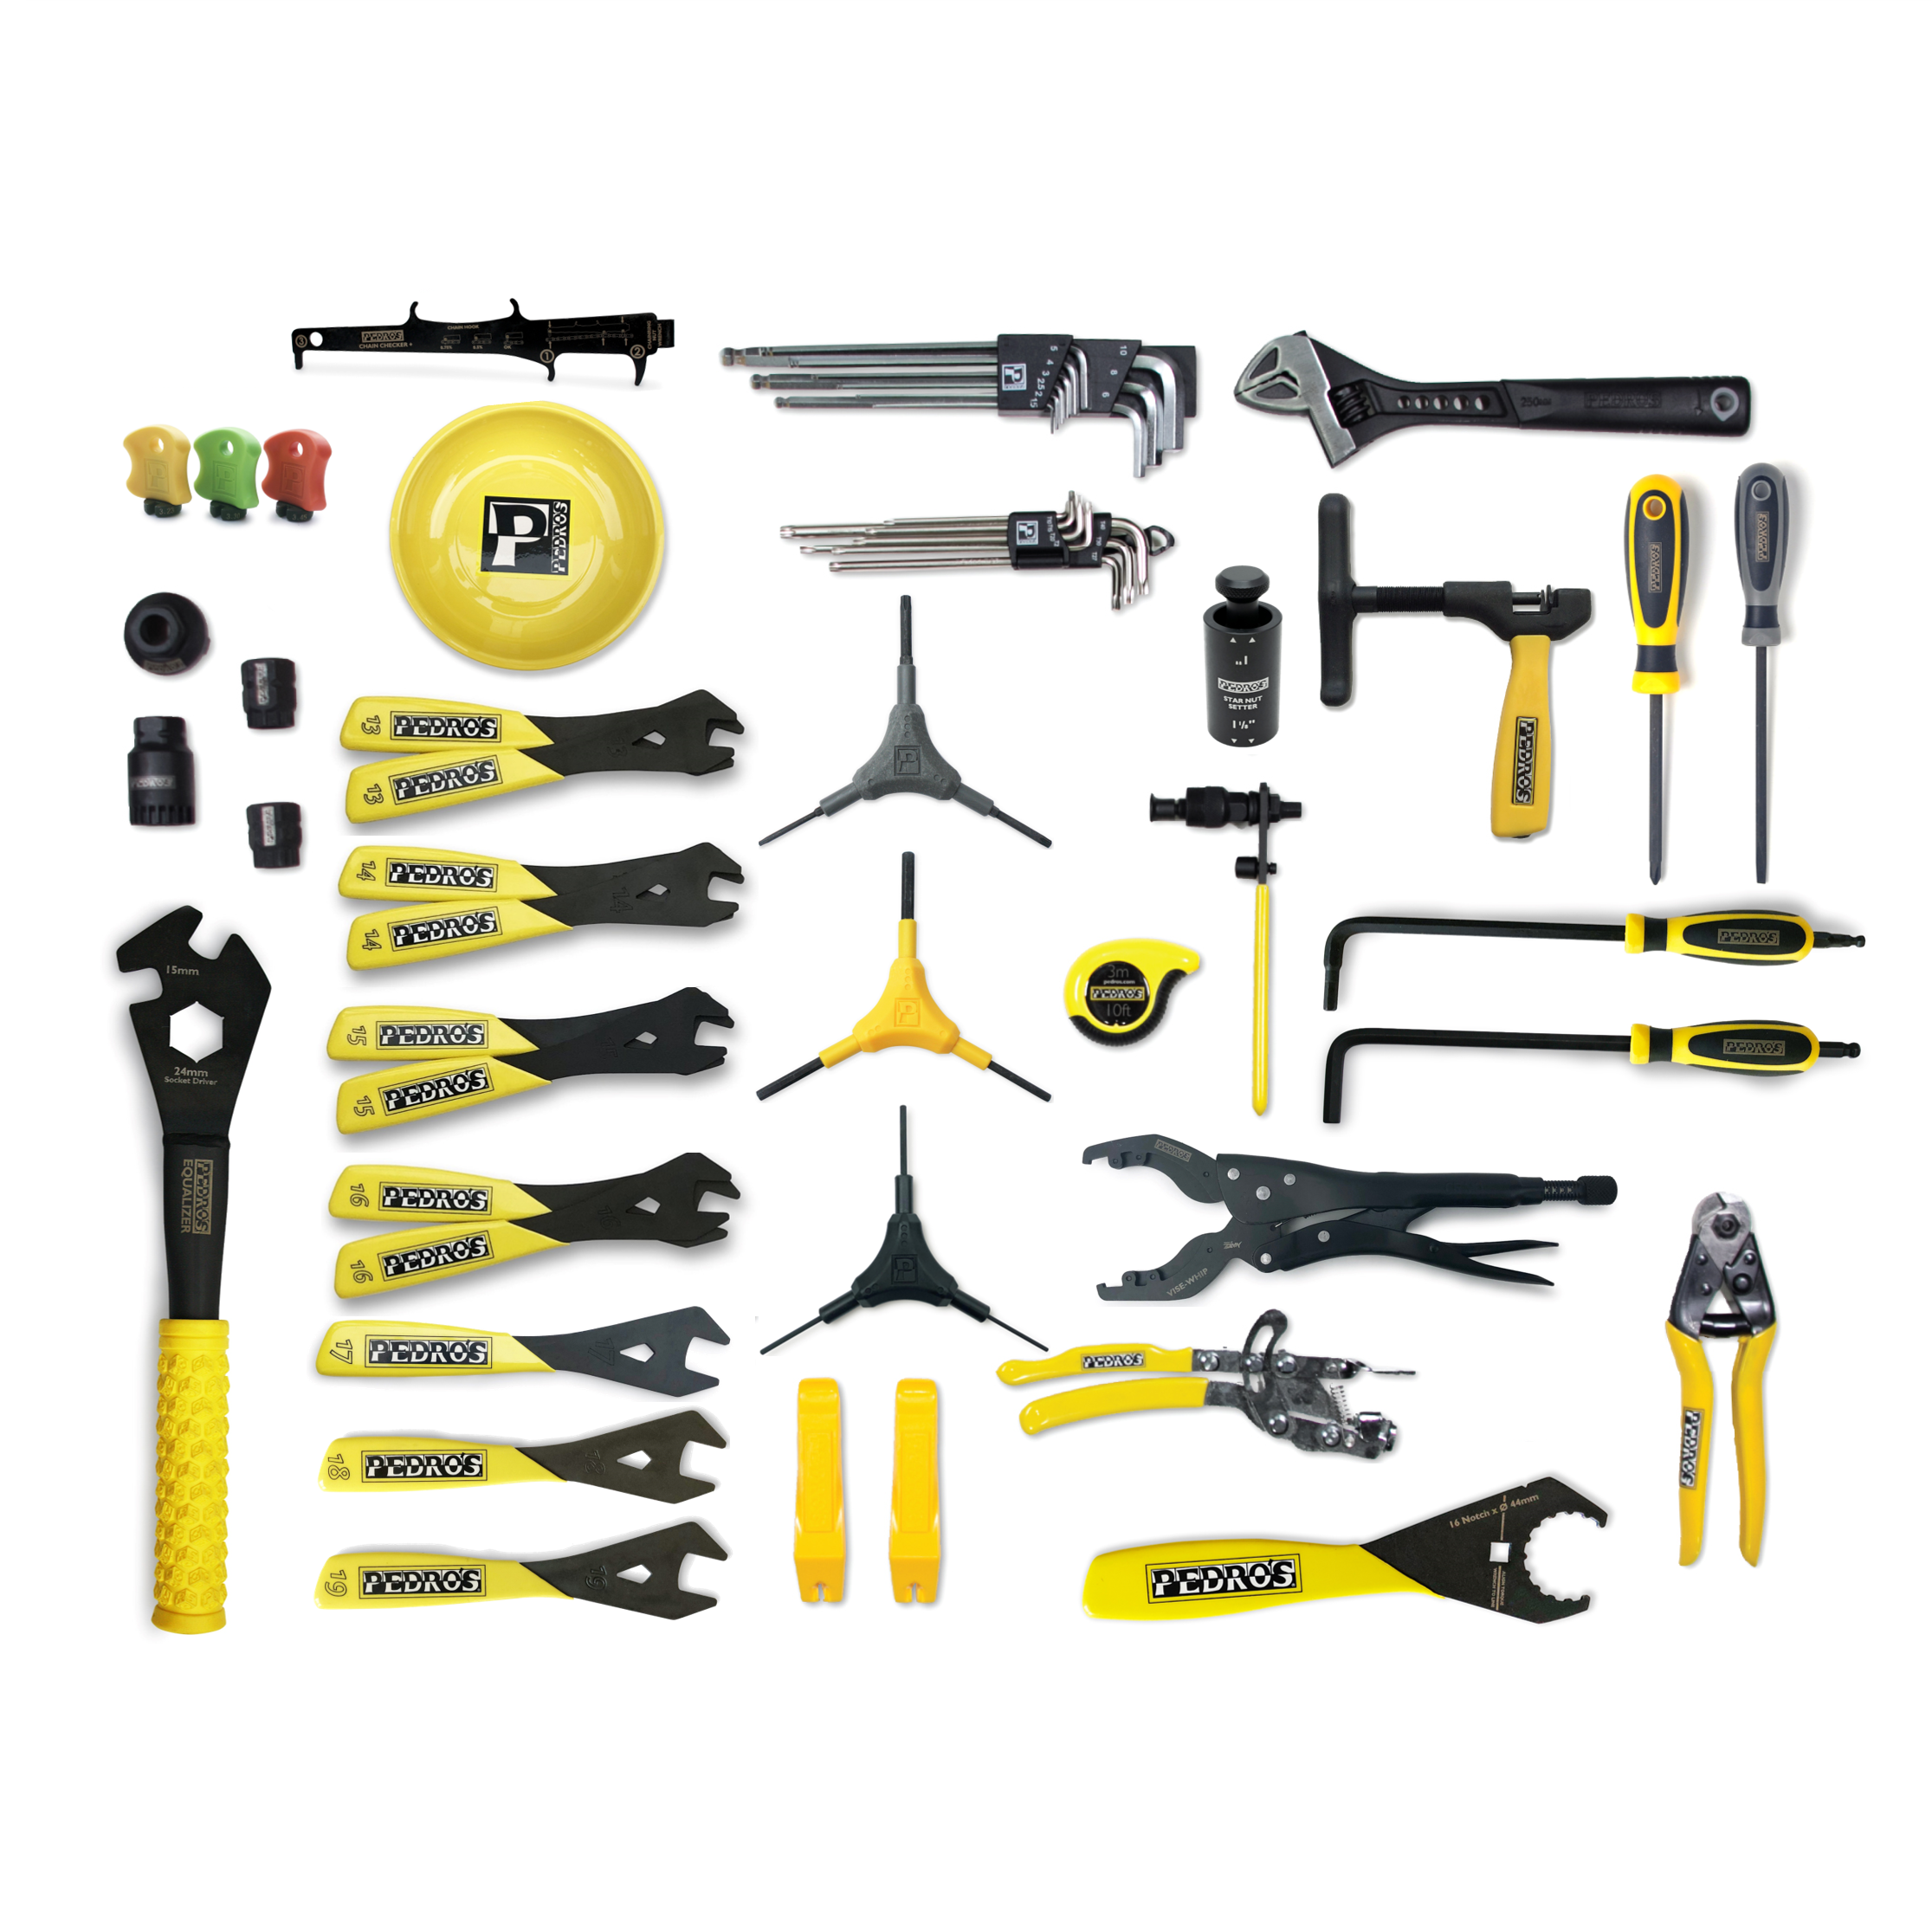 Apprentice Bench Tool Kit – Pedro's NA